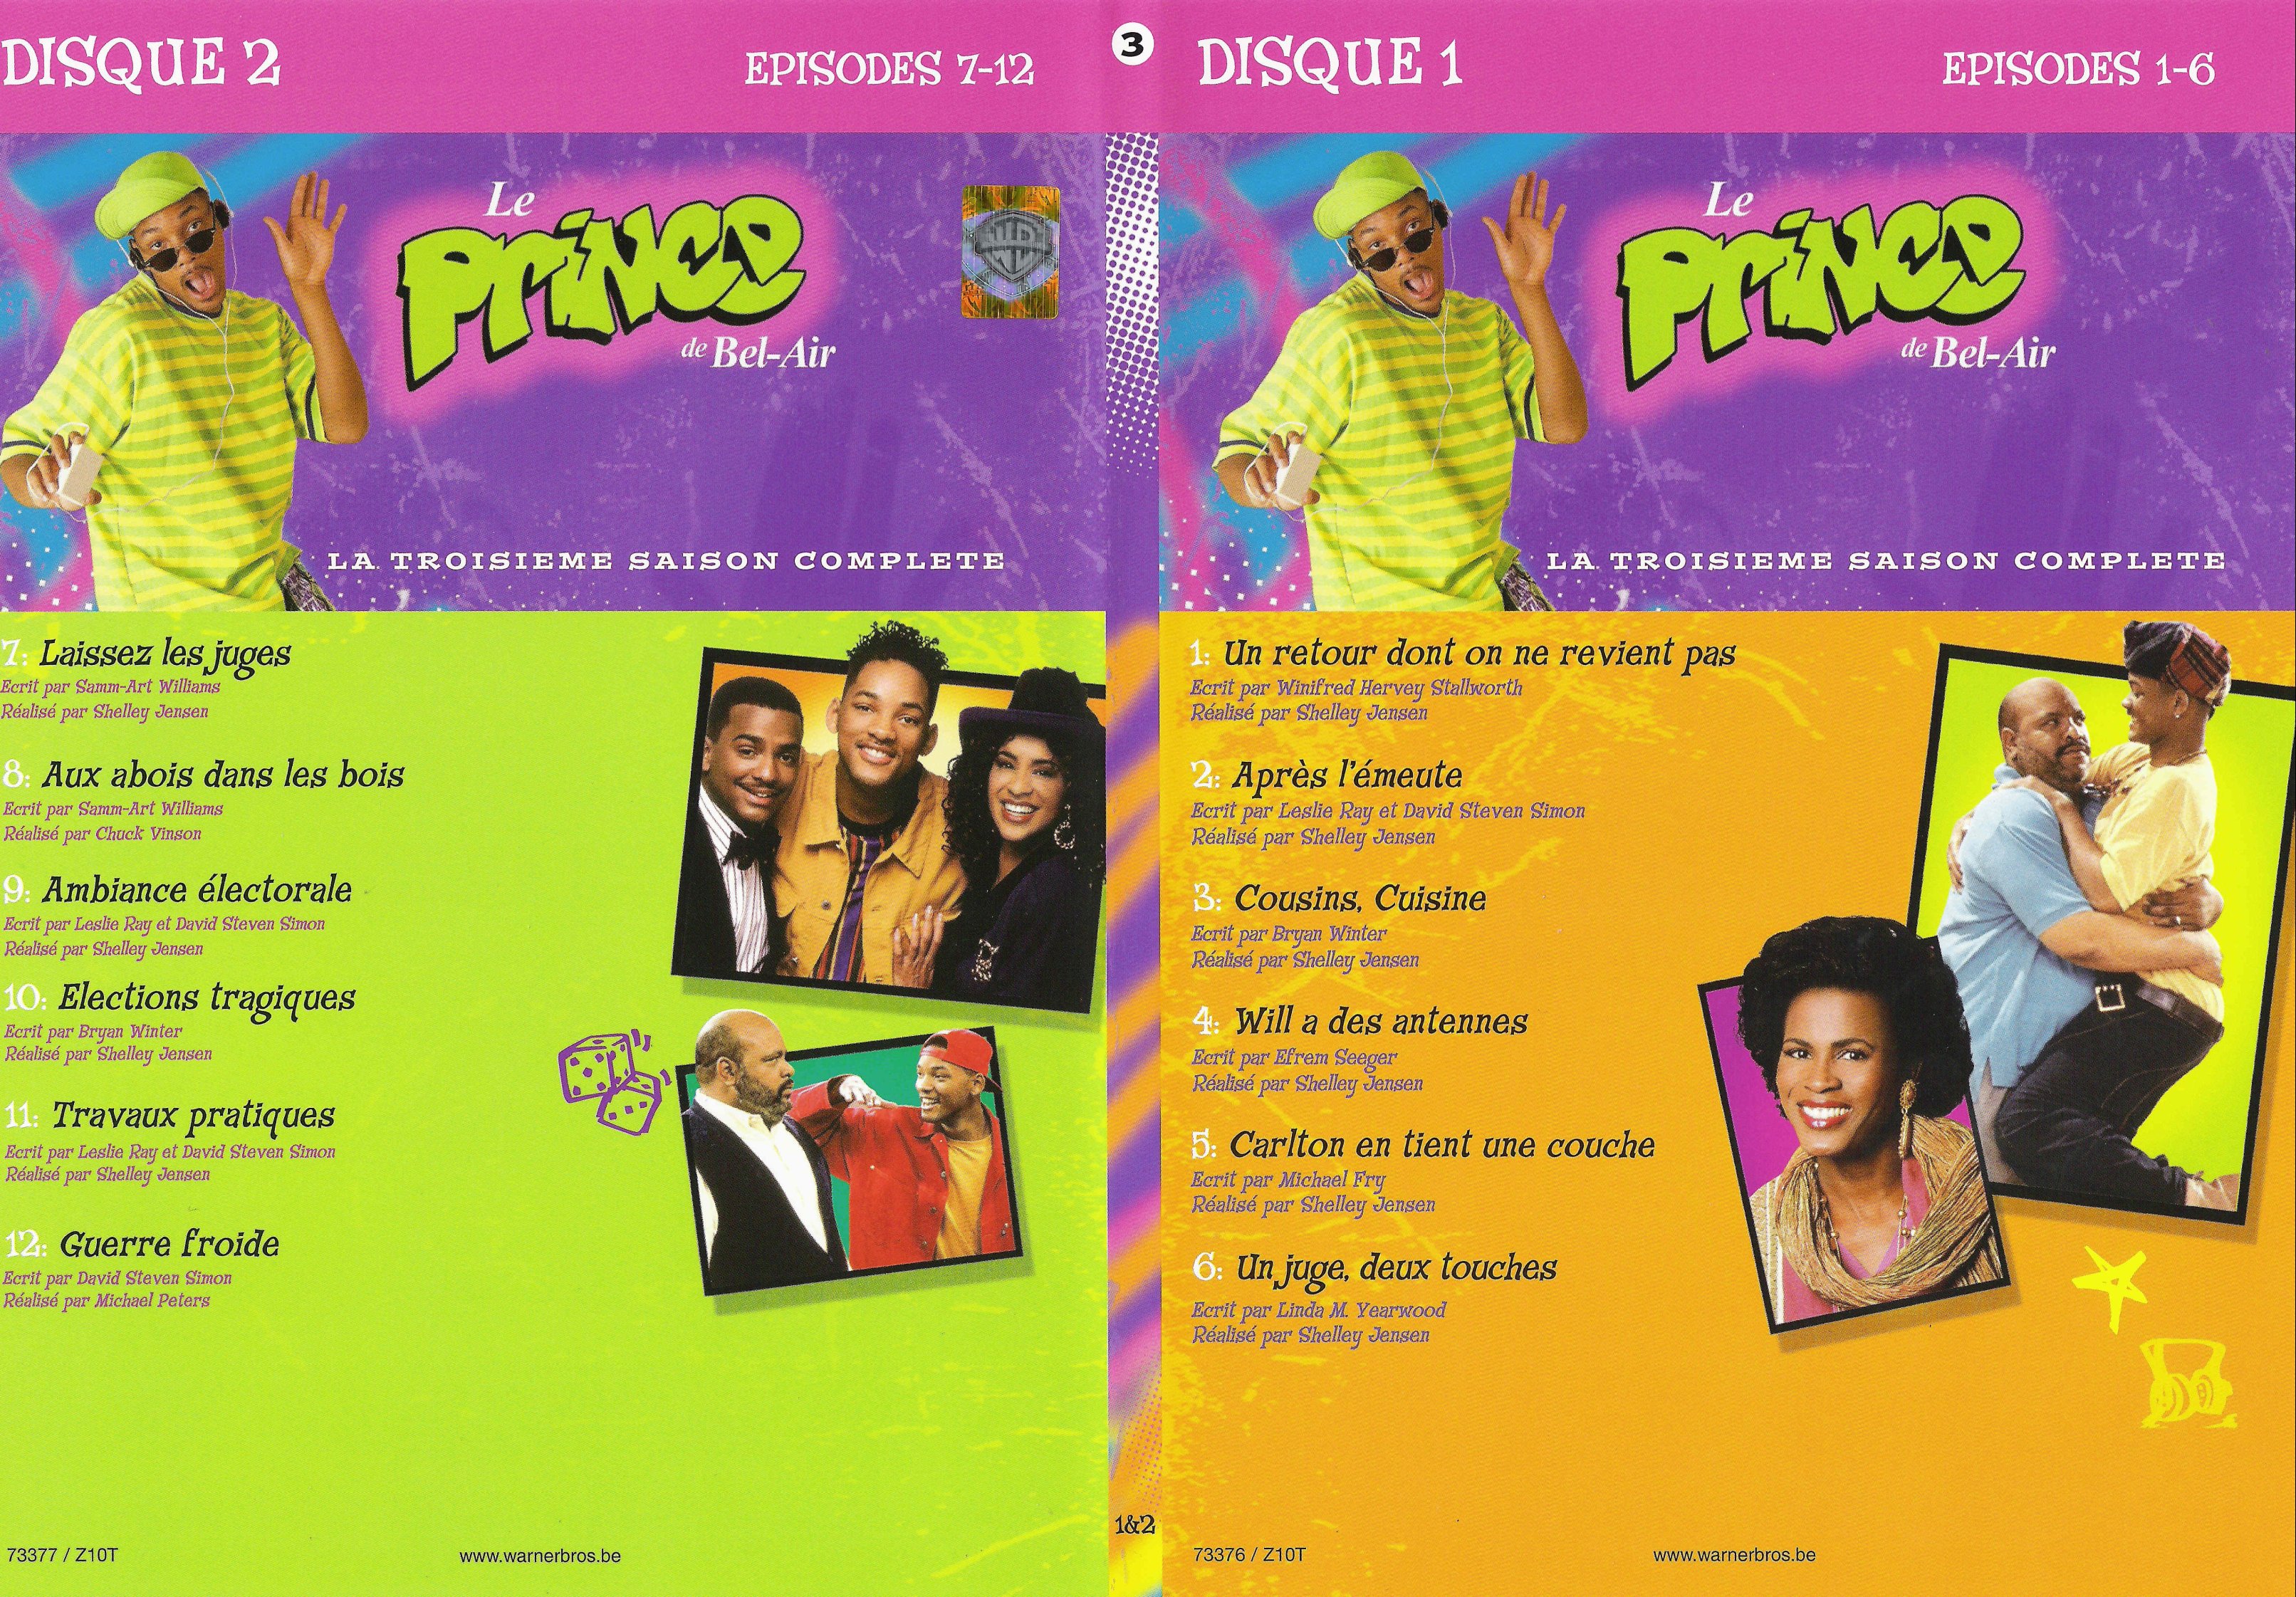 Jaquette DVD Le prince de Bel Air saison 3 vol 1